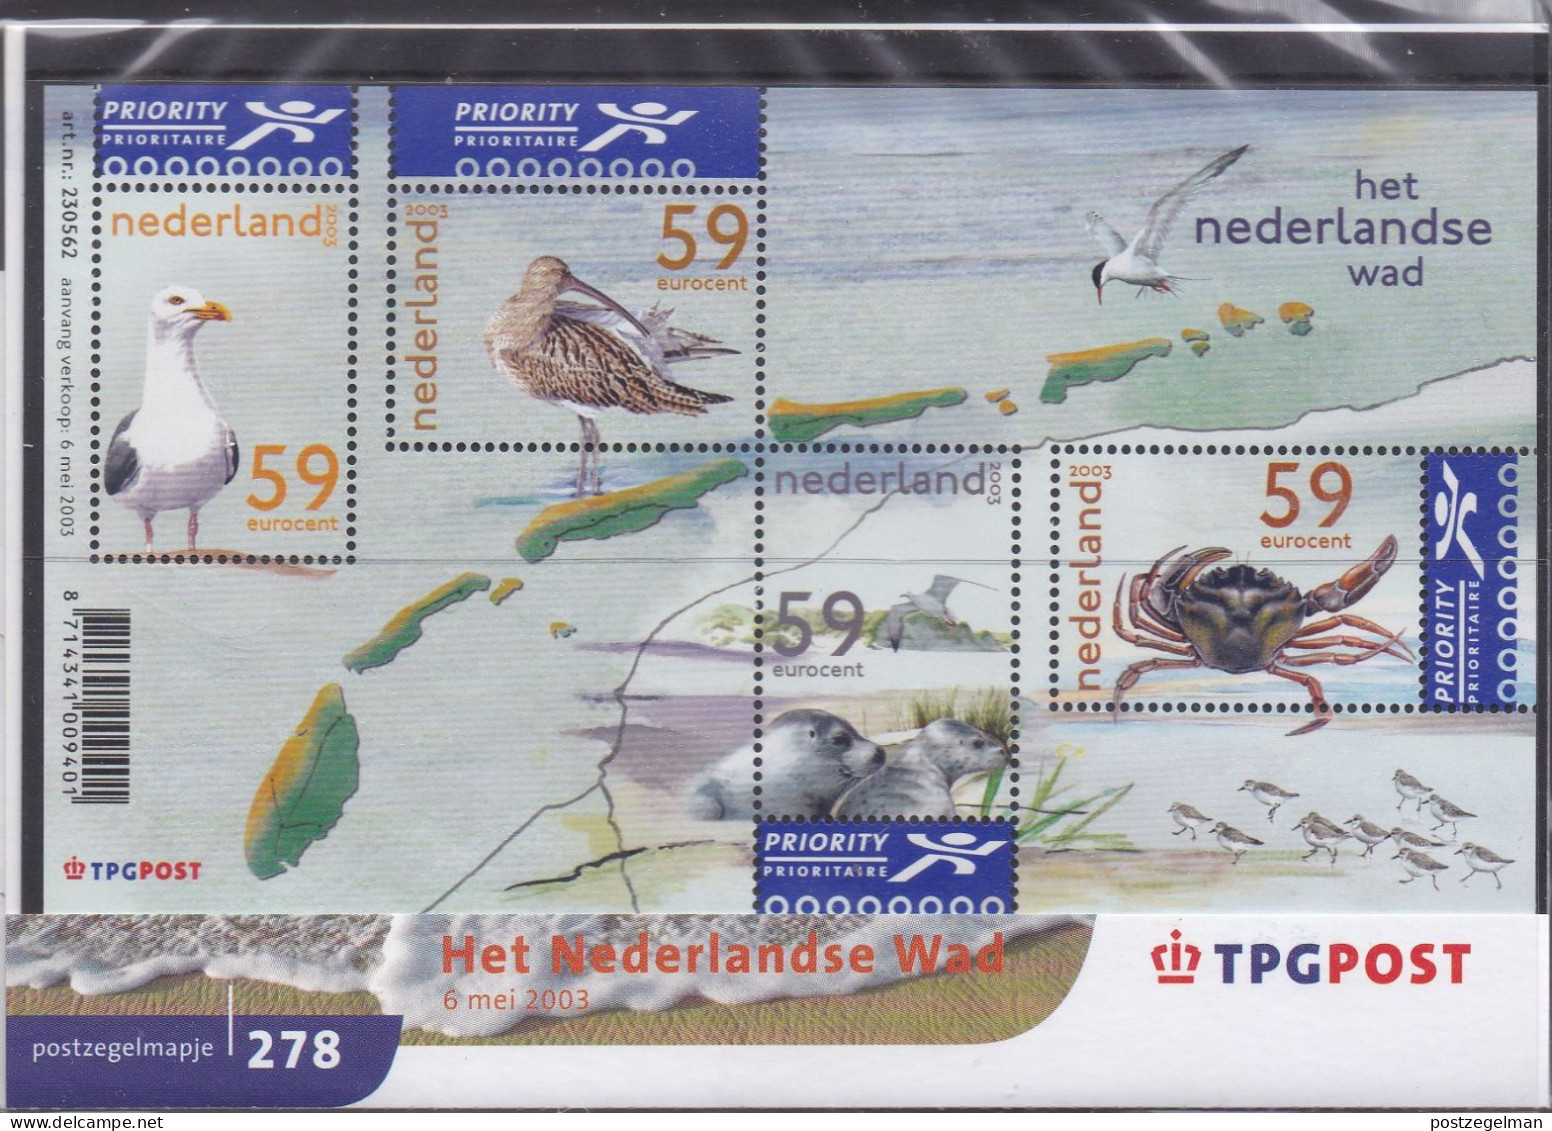 NEDERLAND, 2003, MNH Zegels In Mapje, Nederlandse Wad , NVPH Nrs. 2171, Scannr. M278 - Neufs